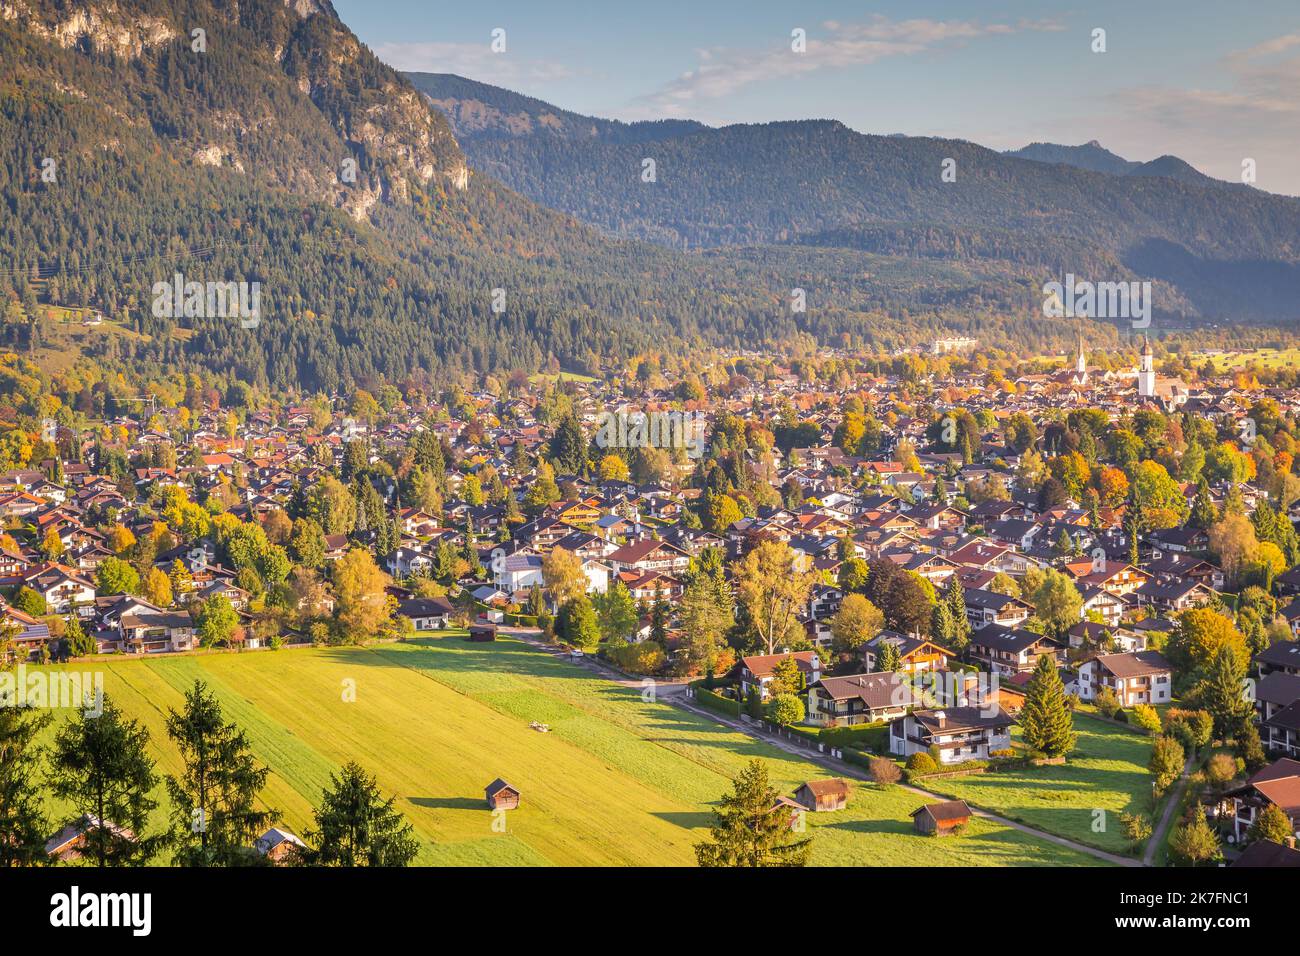 Garmisch-Partenkirchen in Bavaria at autumn, with alps Wetterstein, Germany Stock Photo